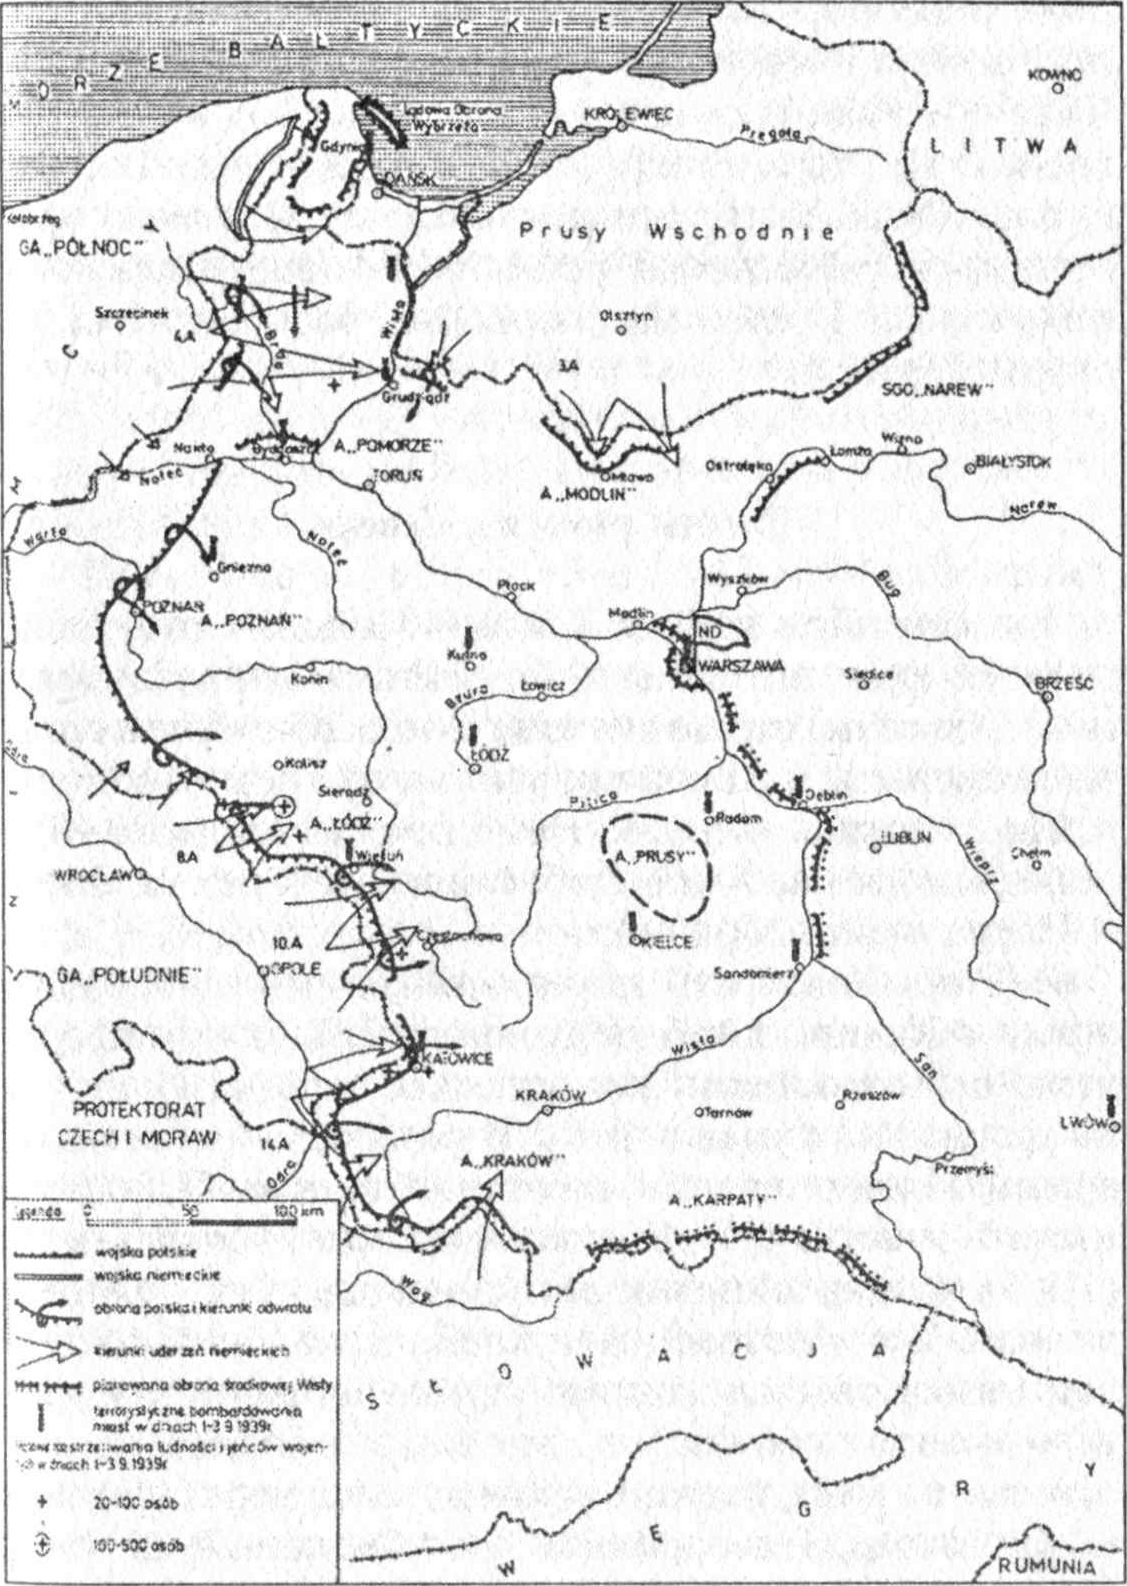 Положение сторон к 3 сентября 1939 г